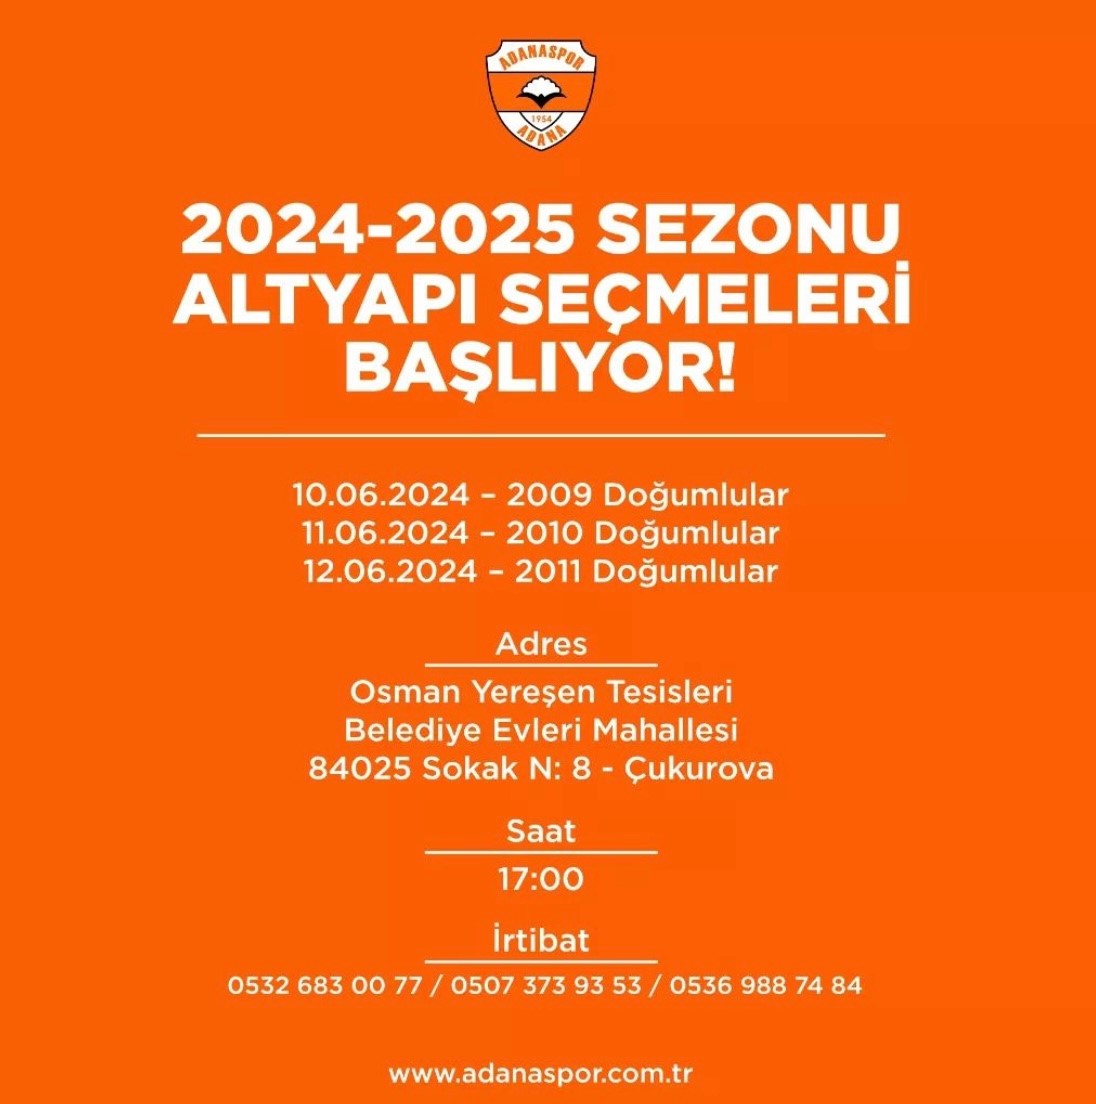 Adanaspor’da yeni sezonun altyapı seçmeleri başlıyor